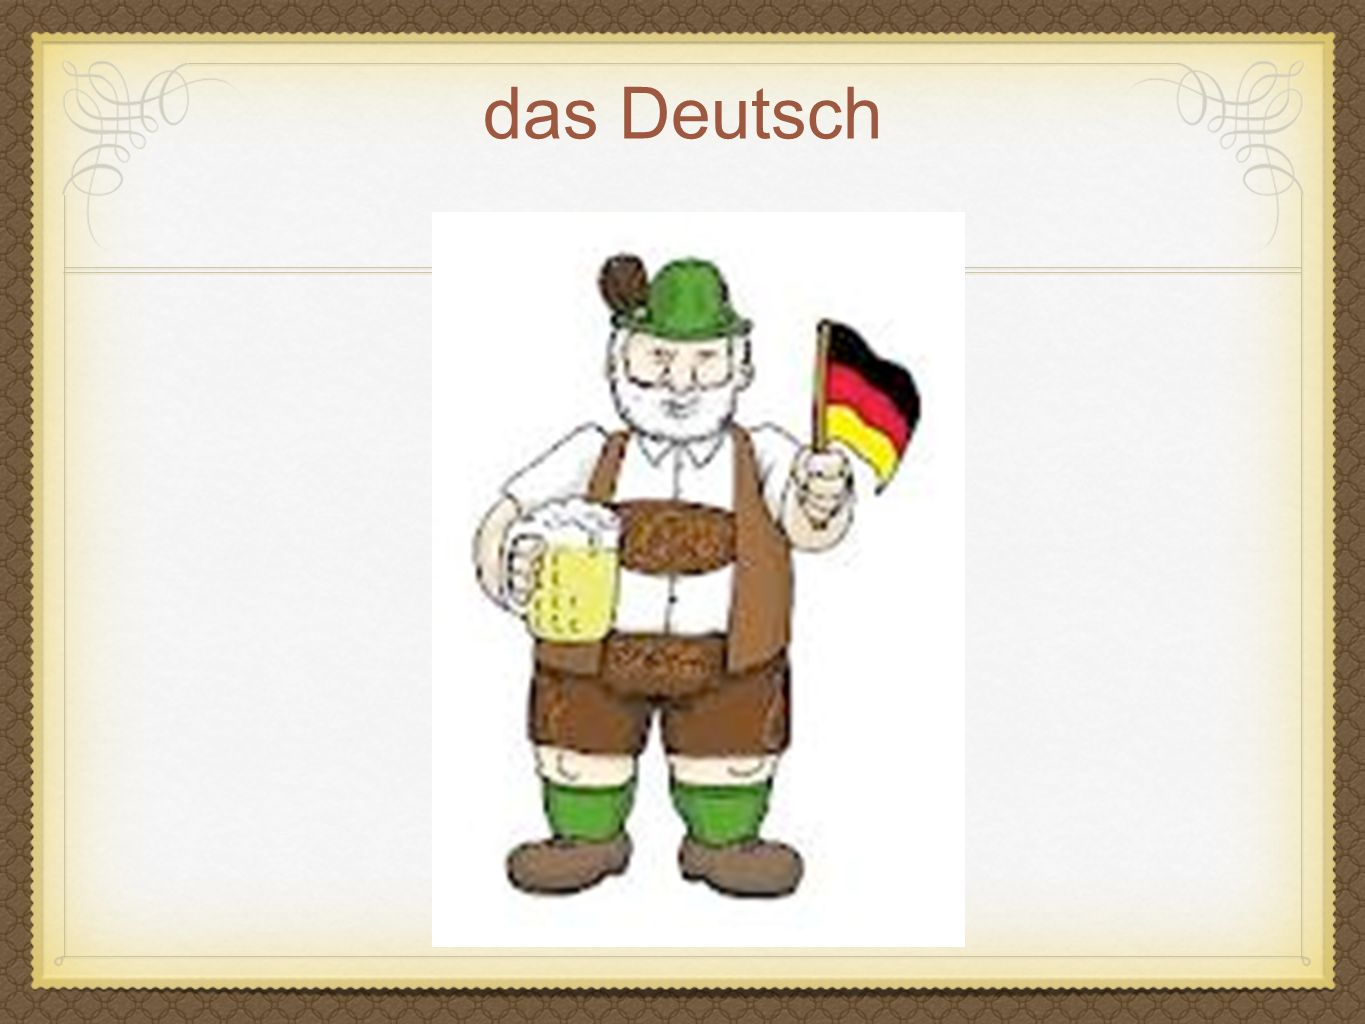 das Deutsch